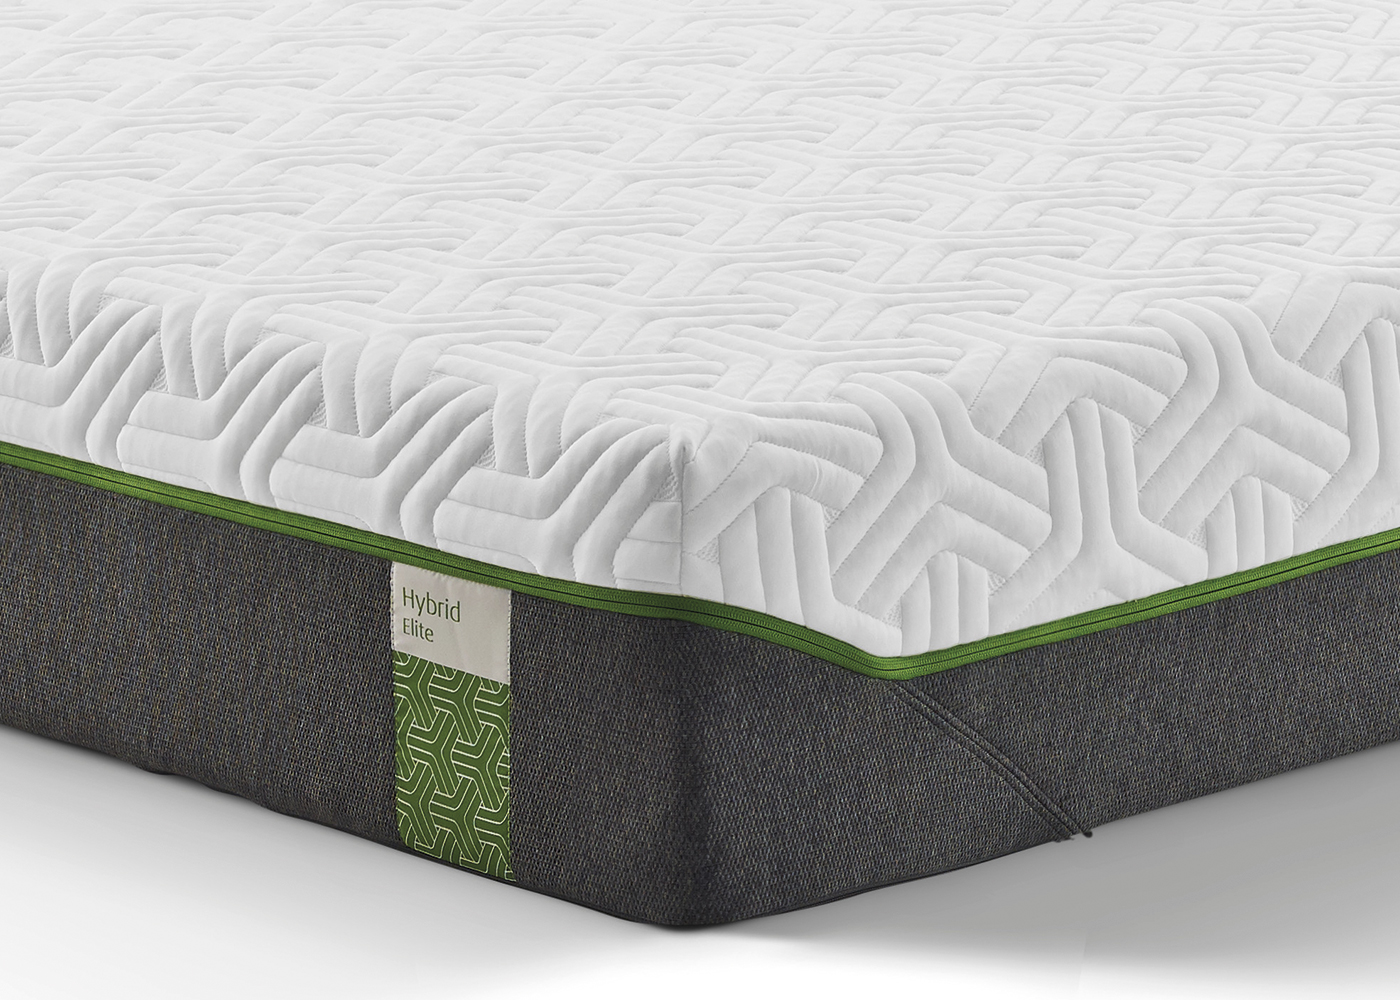 warren elite hybrid mattress